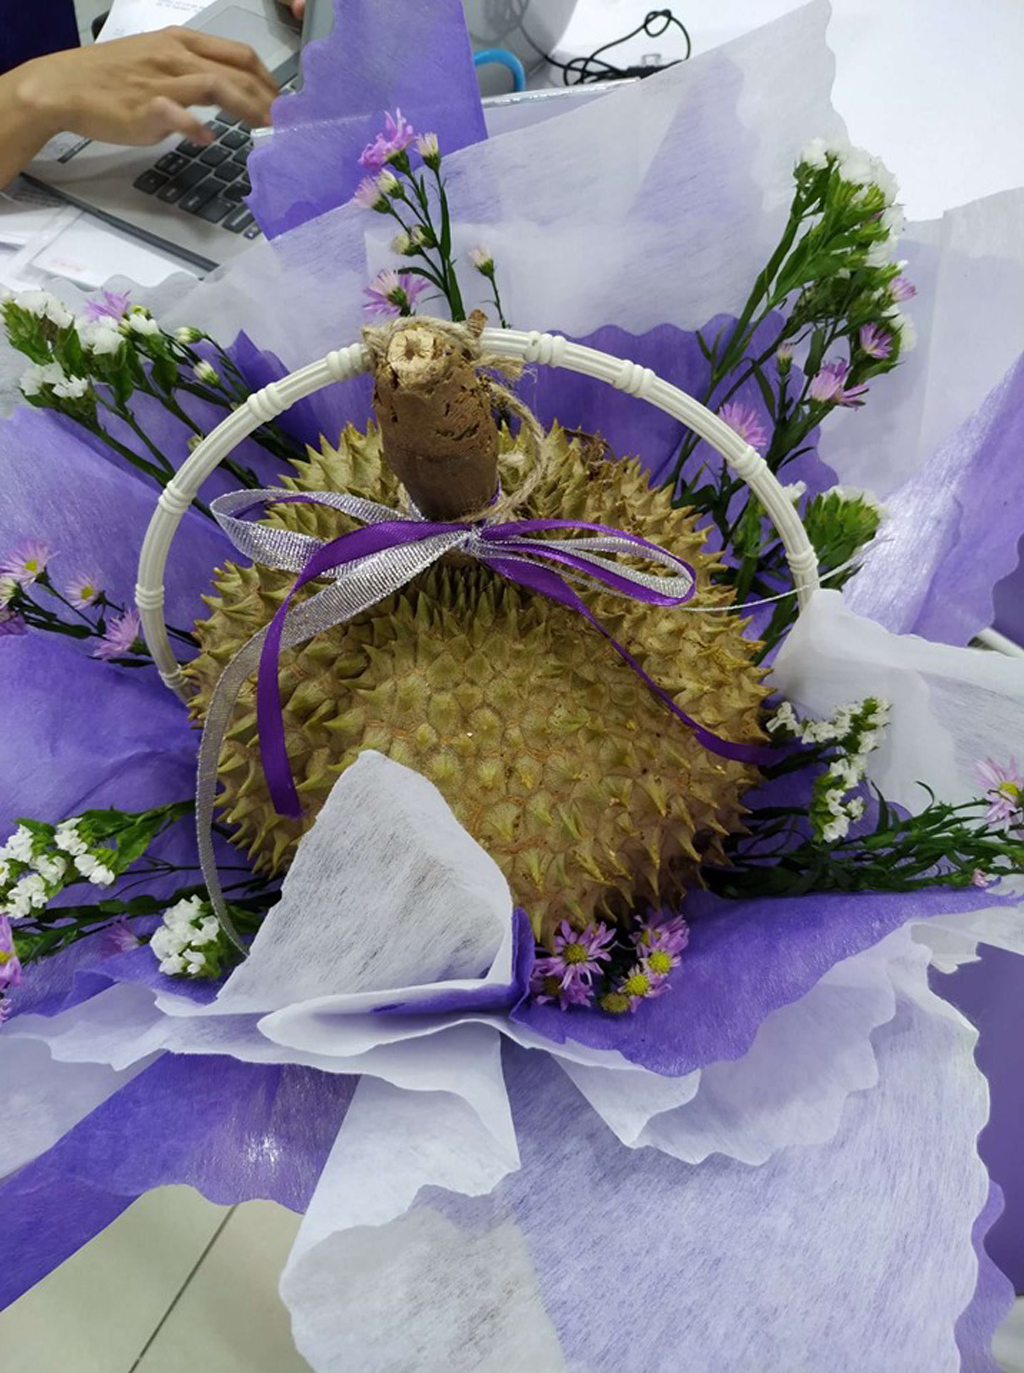 Hoa sầu riêng vừa là một món quà độc đáo và thực tế 